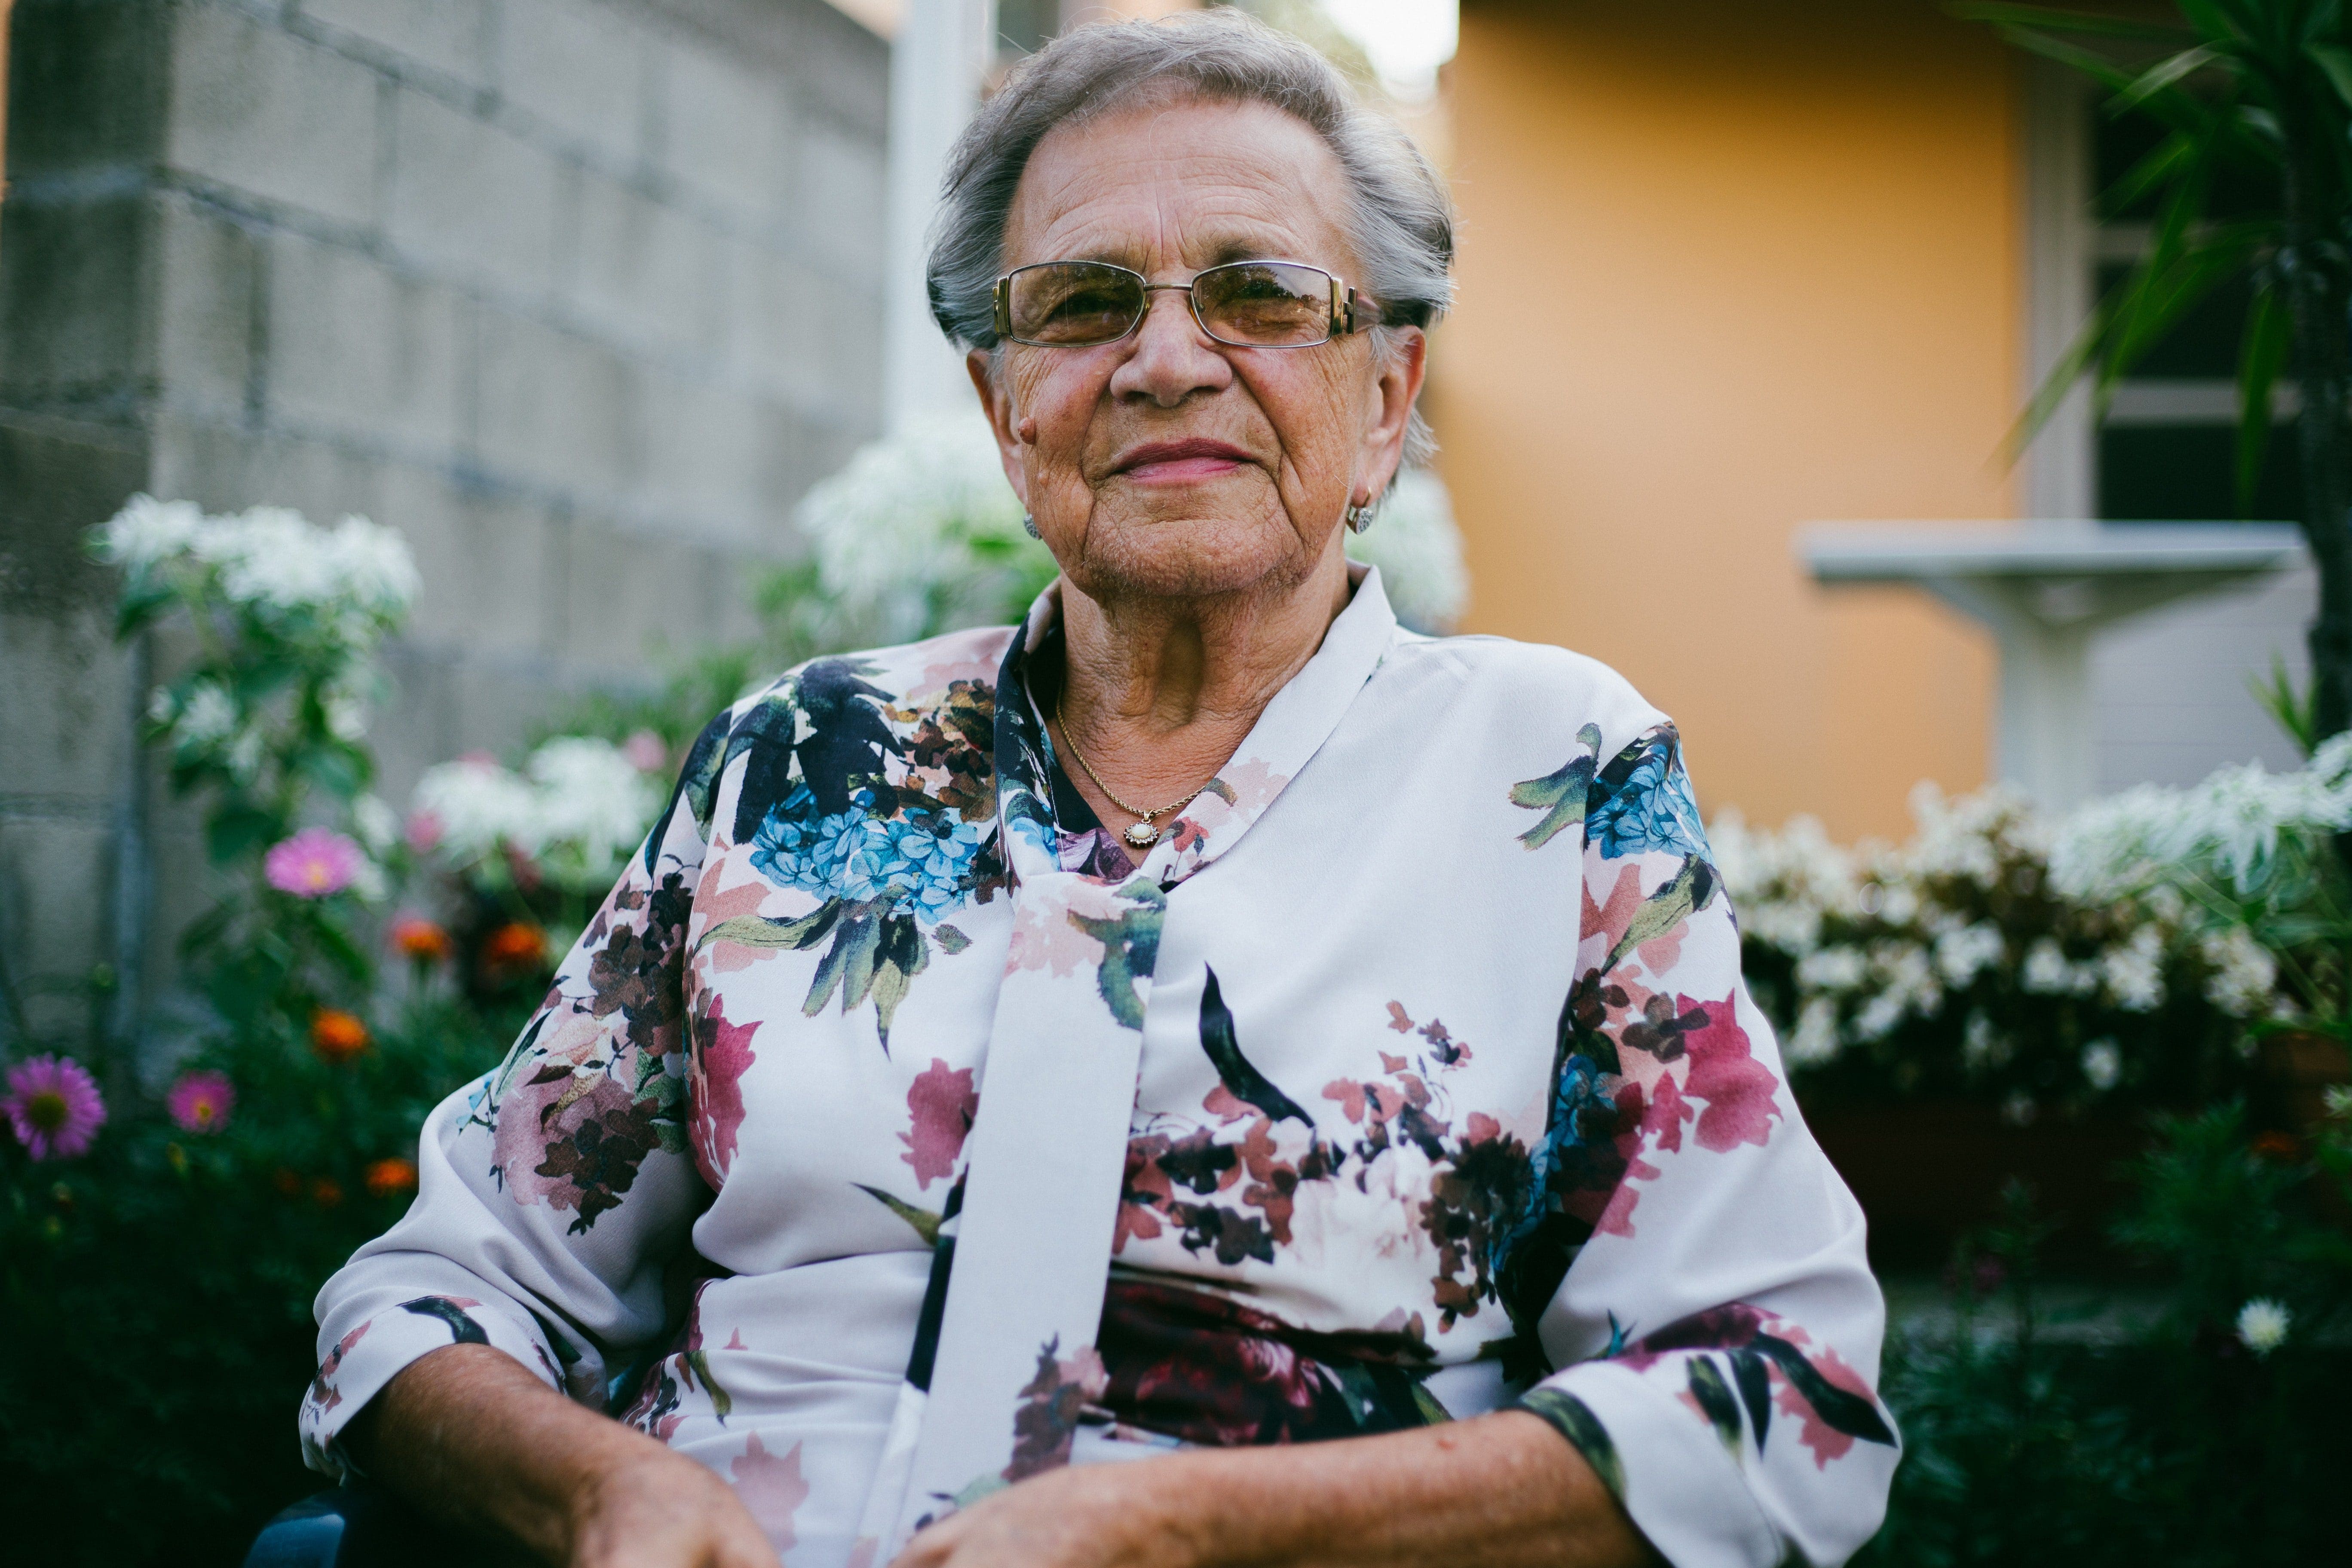 Elderly lady in a flowery top outside